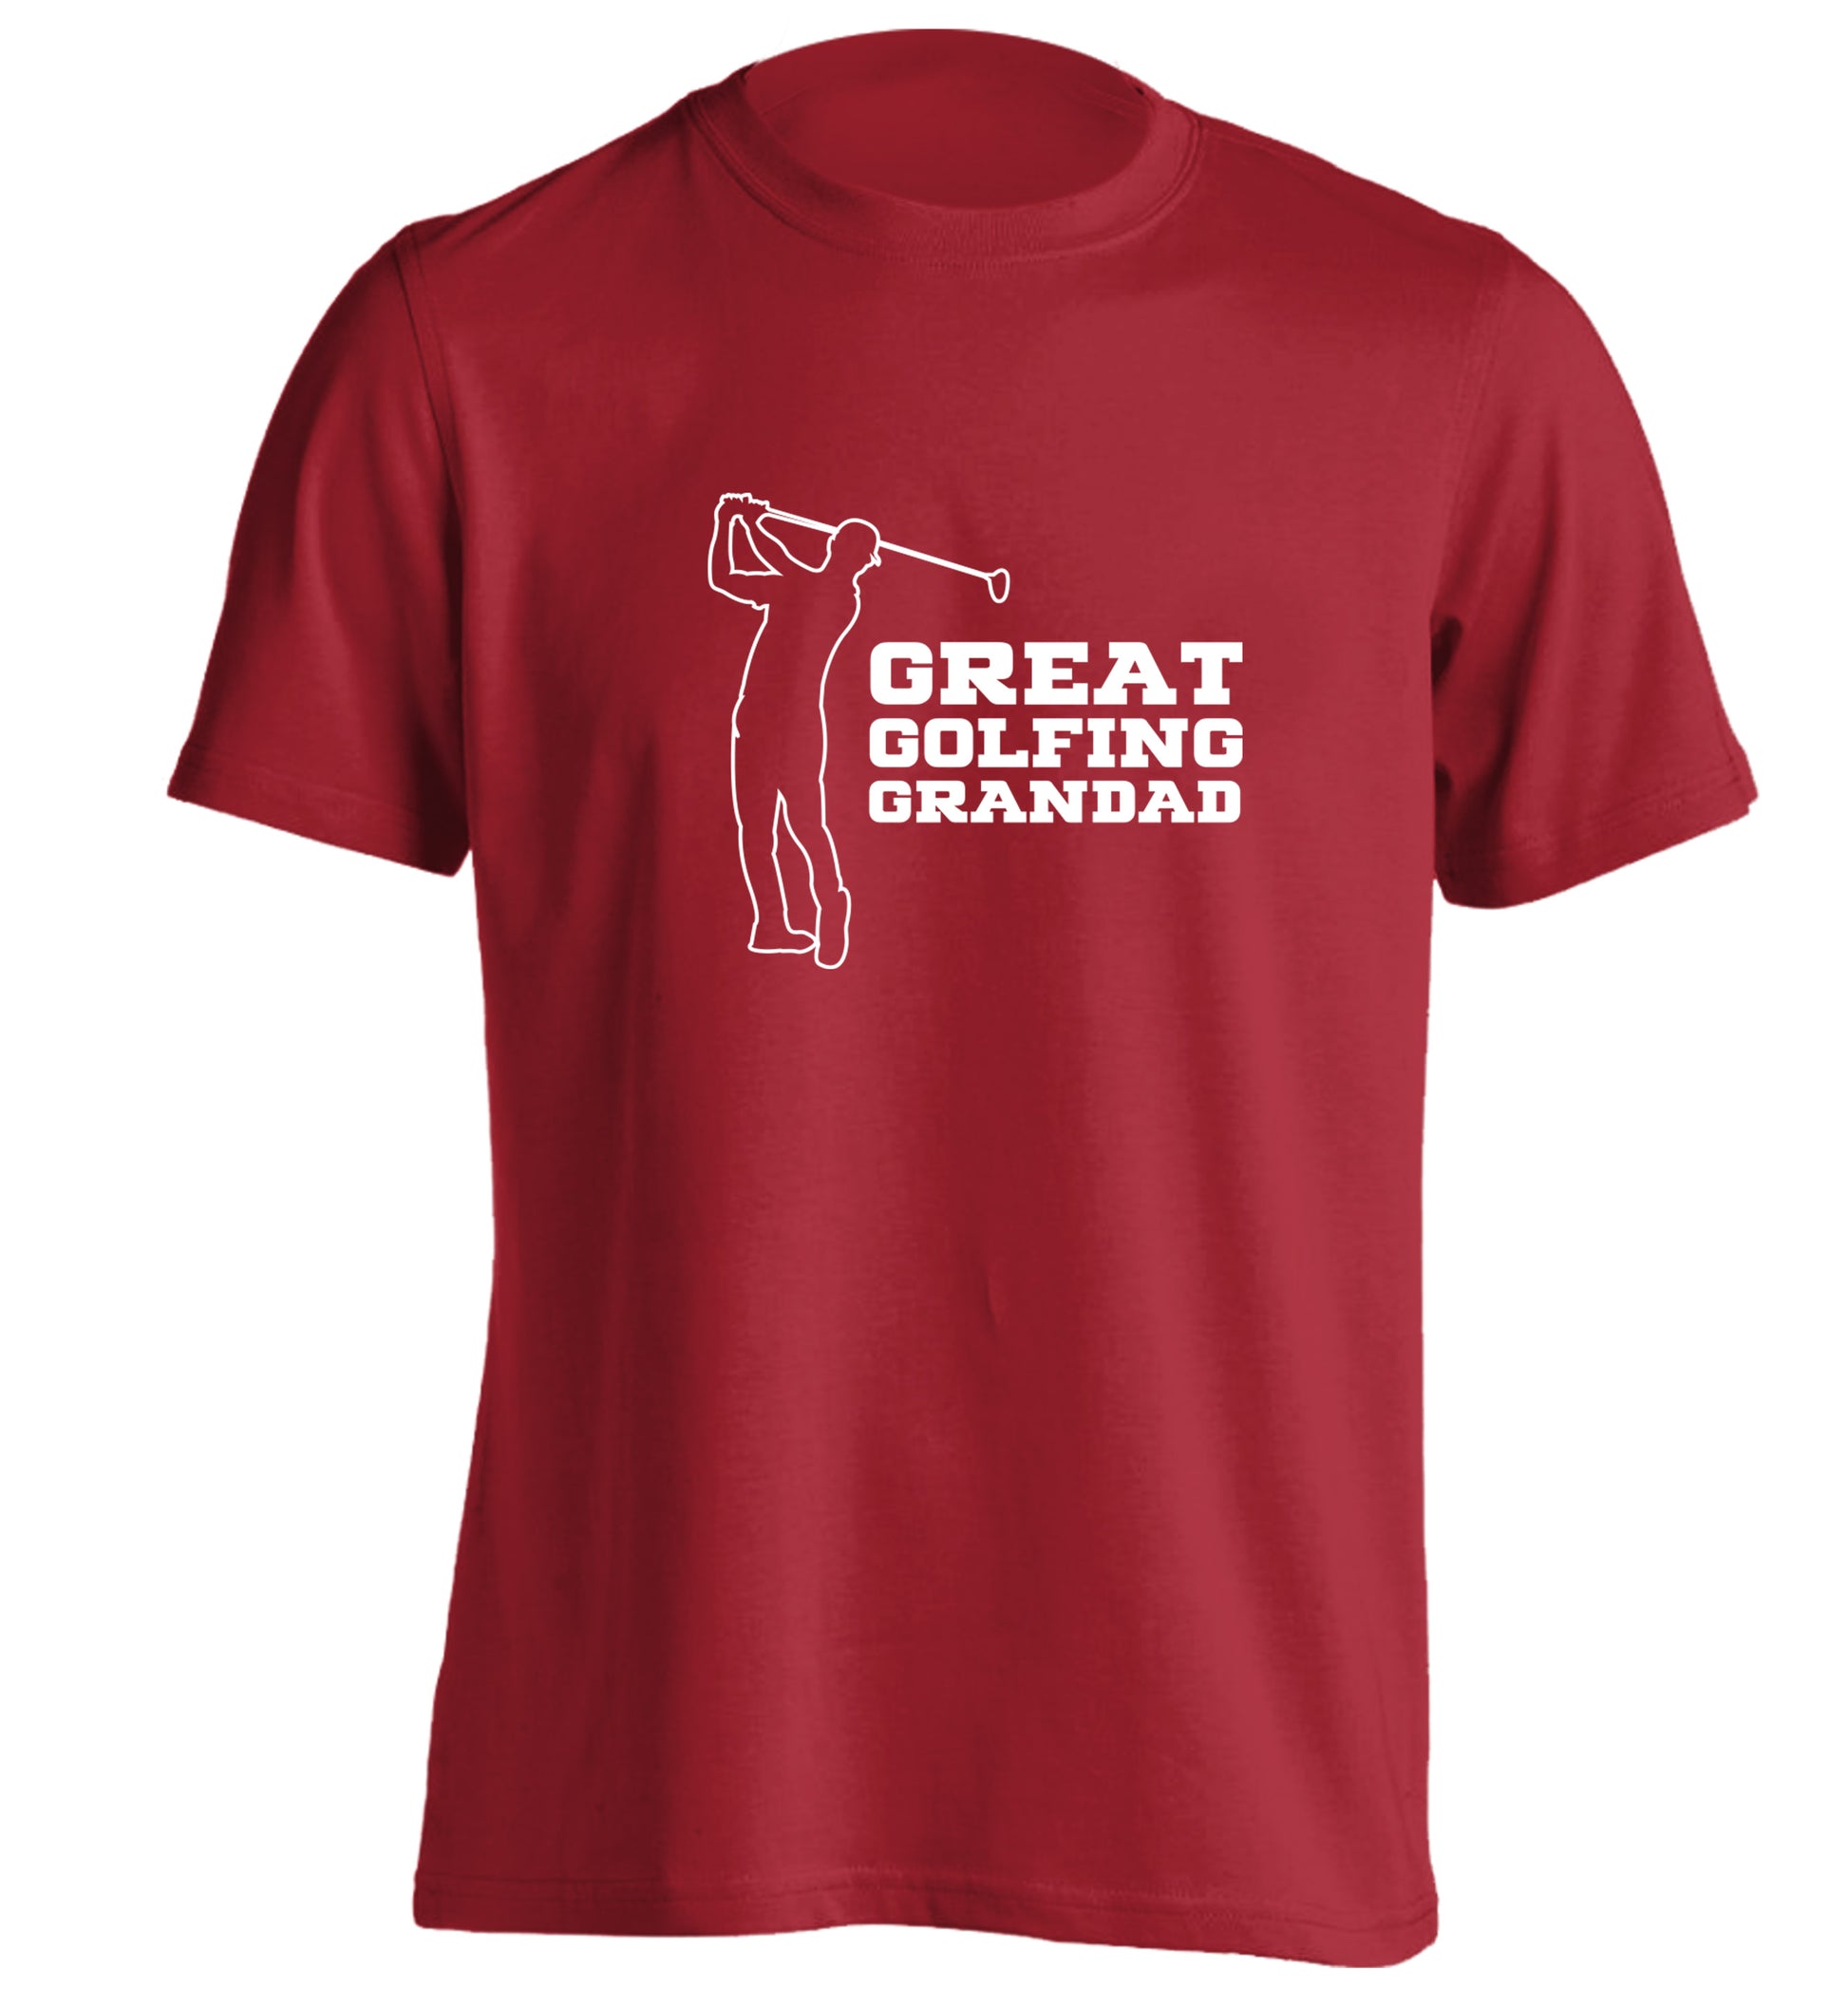 Great Golfing Grandad adults unisex red Tshirt 2XL